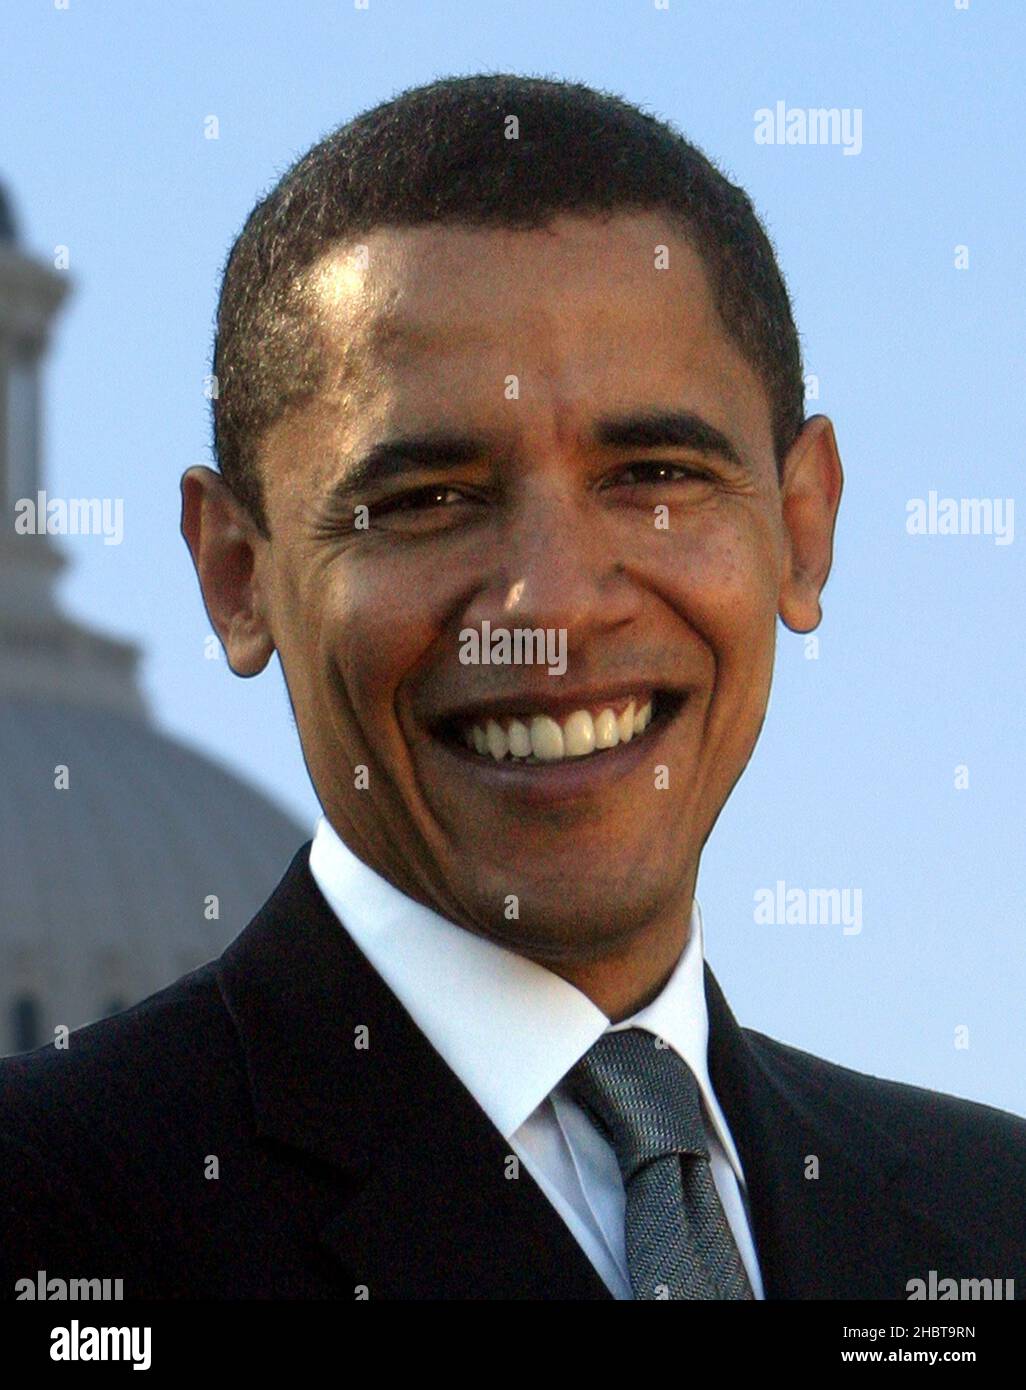 Barack Obama, le président des États-Unis en 44th, dans son portrait officiel en tant que membre du Sénat des États-Unis ca.18 octobre 2005 Banque D'Images